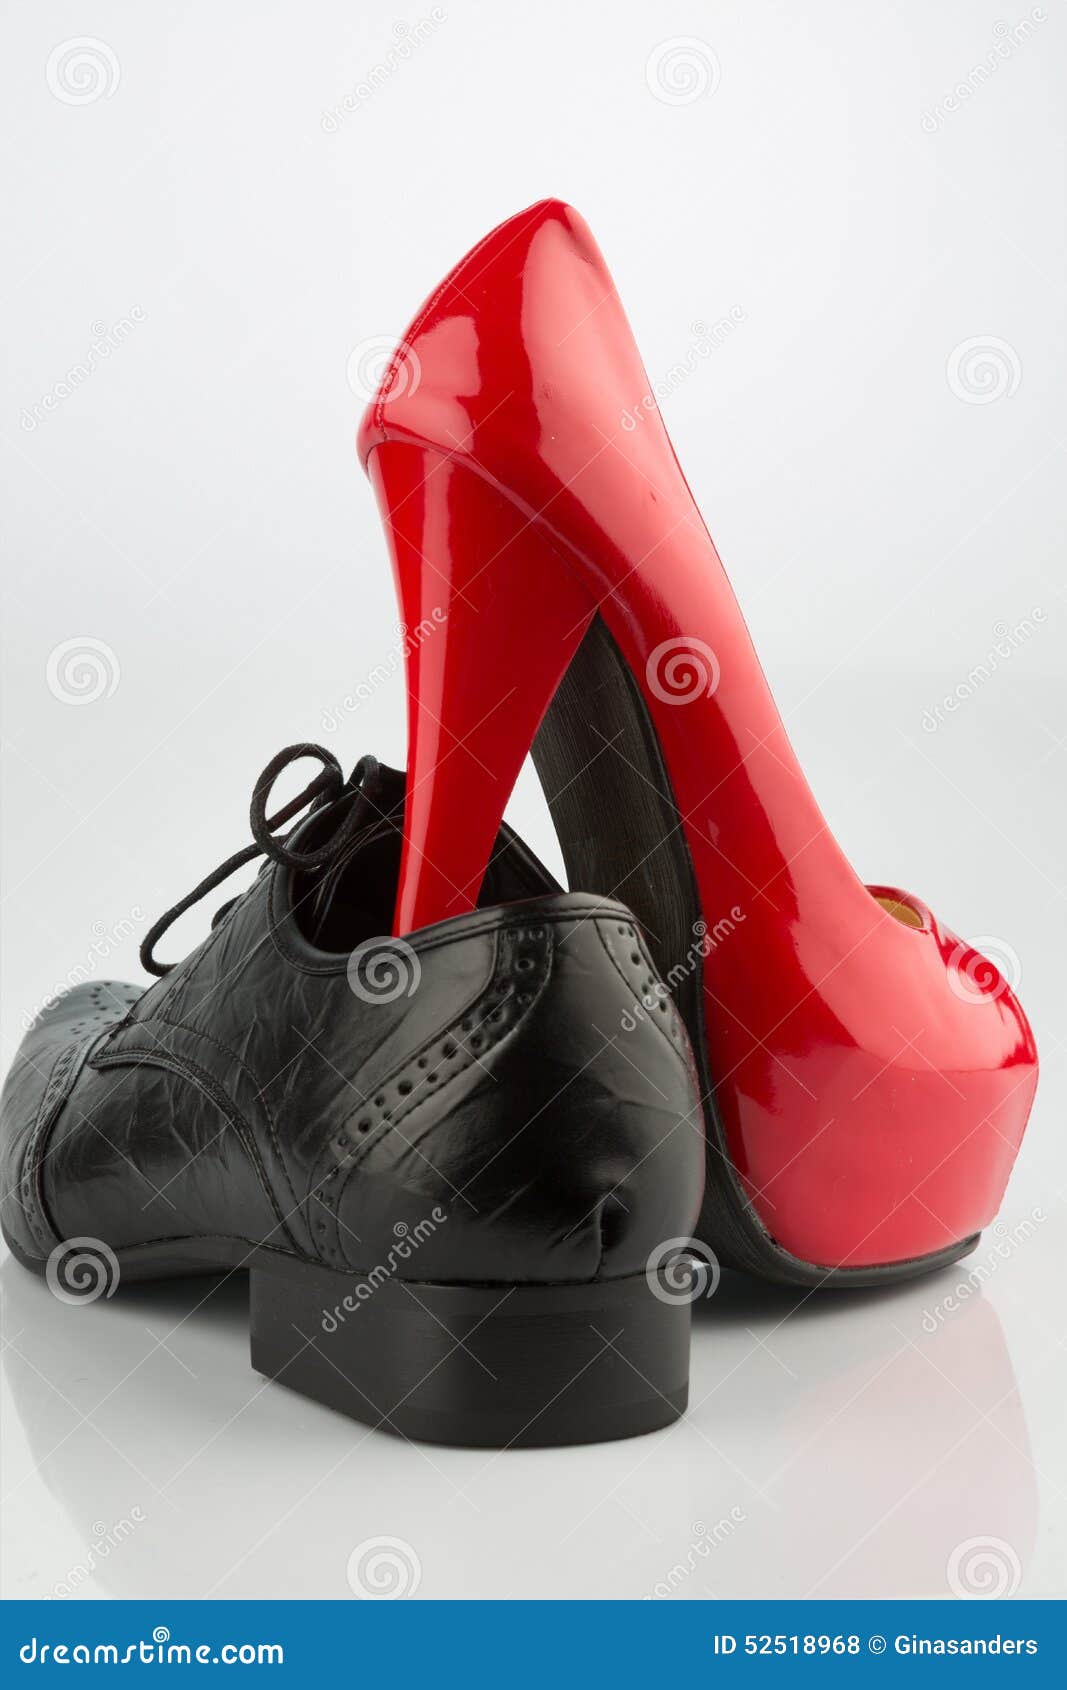 Heels for Men | Men wearing high heels, Men high heels, Men in heels-thanhphatduhoc.com.vn